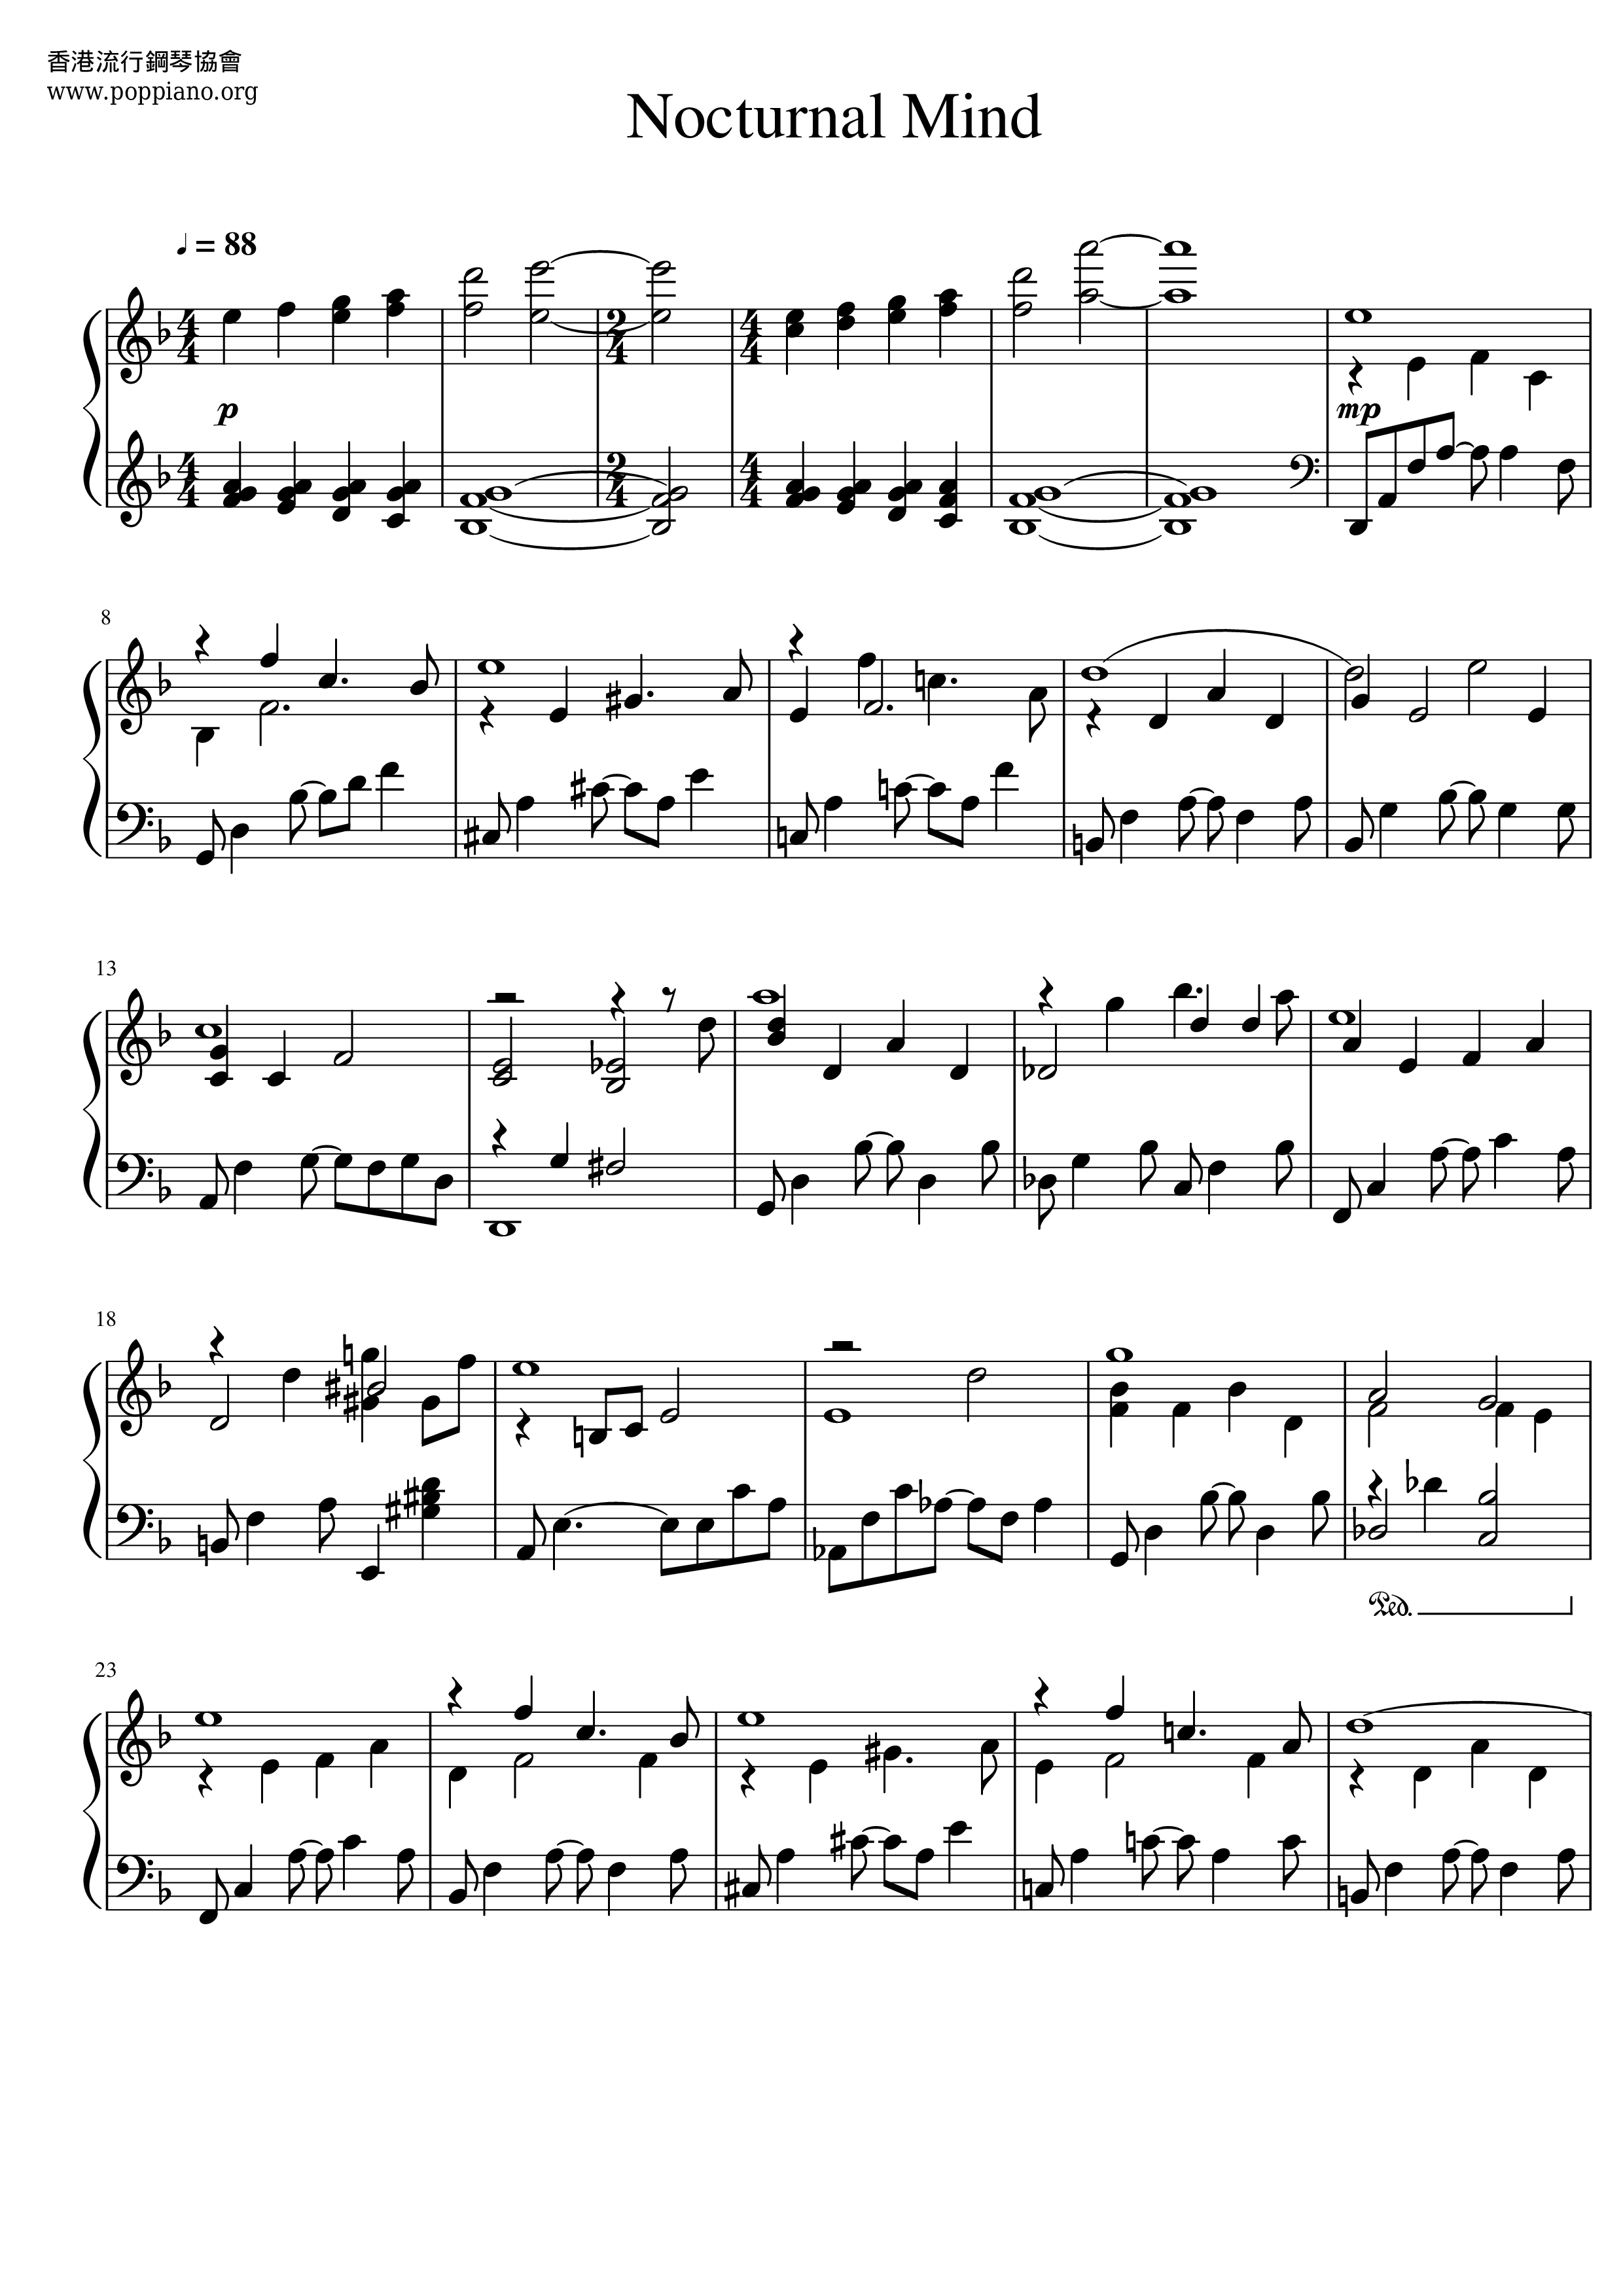 elegant Grave Calm ☆ Yiruma-Nocturnal Mind Sheet Music pdf, - Free Score Download ☆